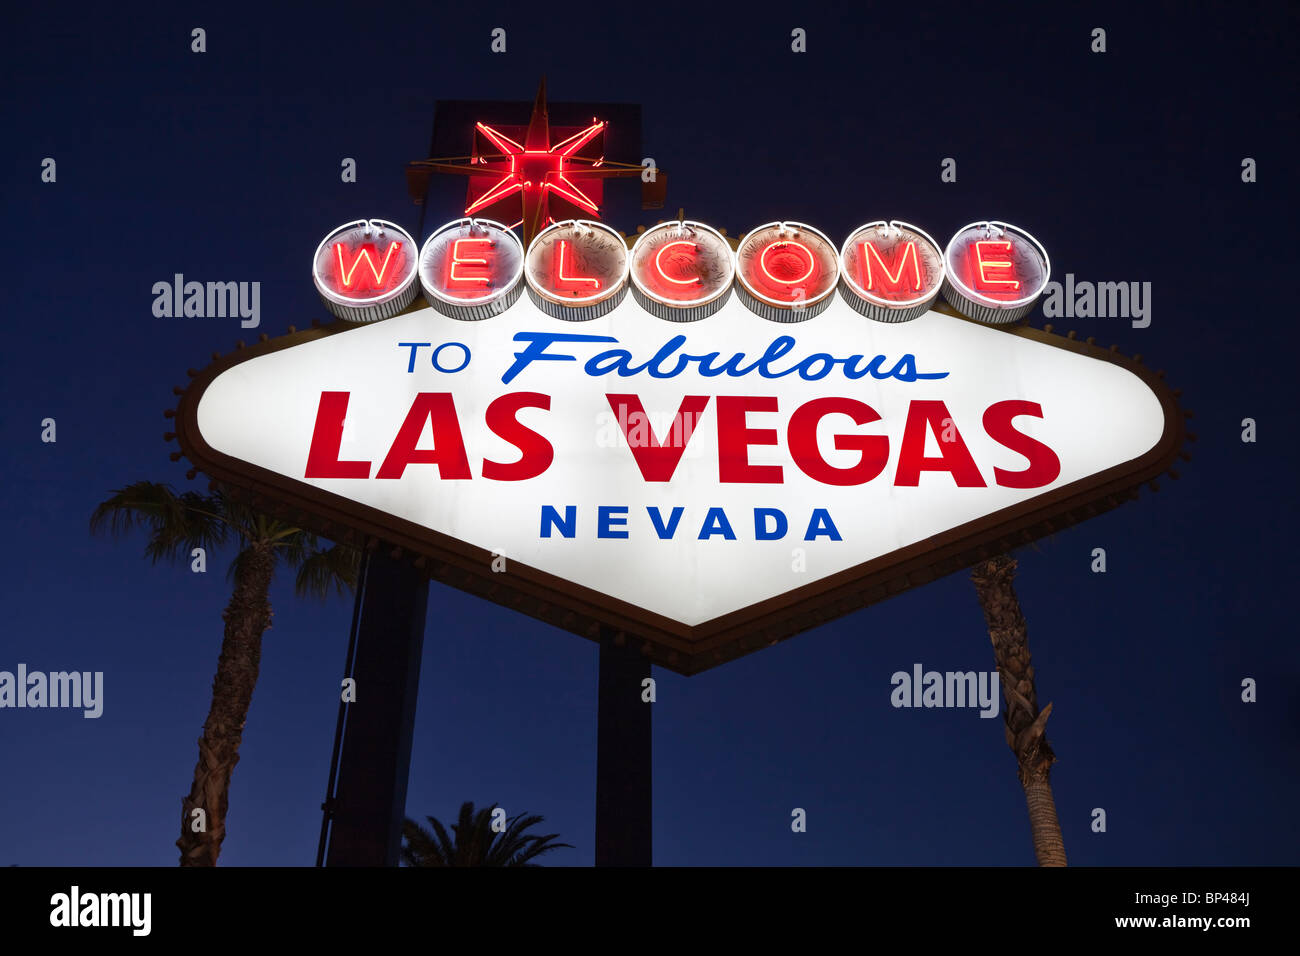 Willkommen Sie bei Fabulous Las Vegas Nevada Straßenschild. Stockfoto